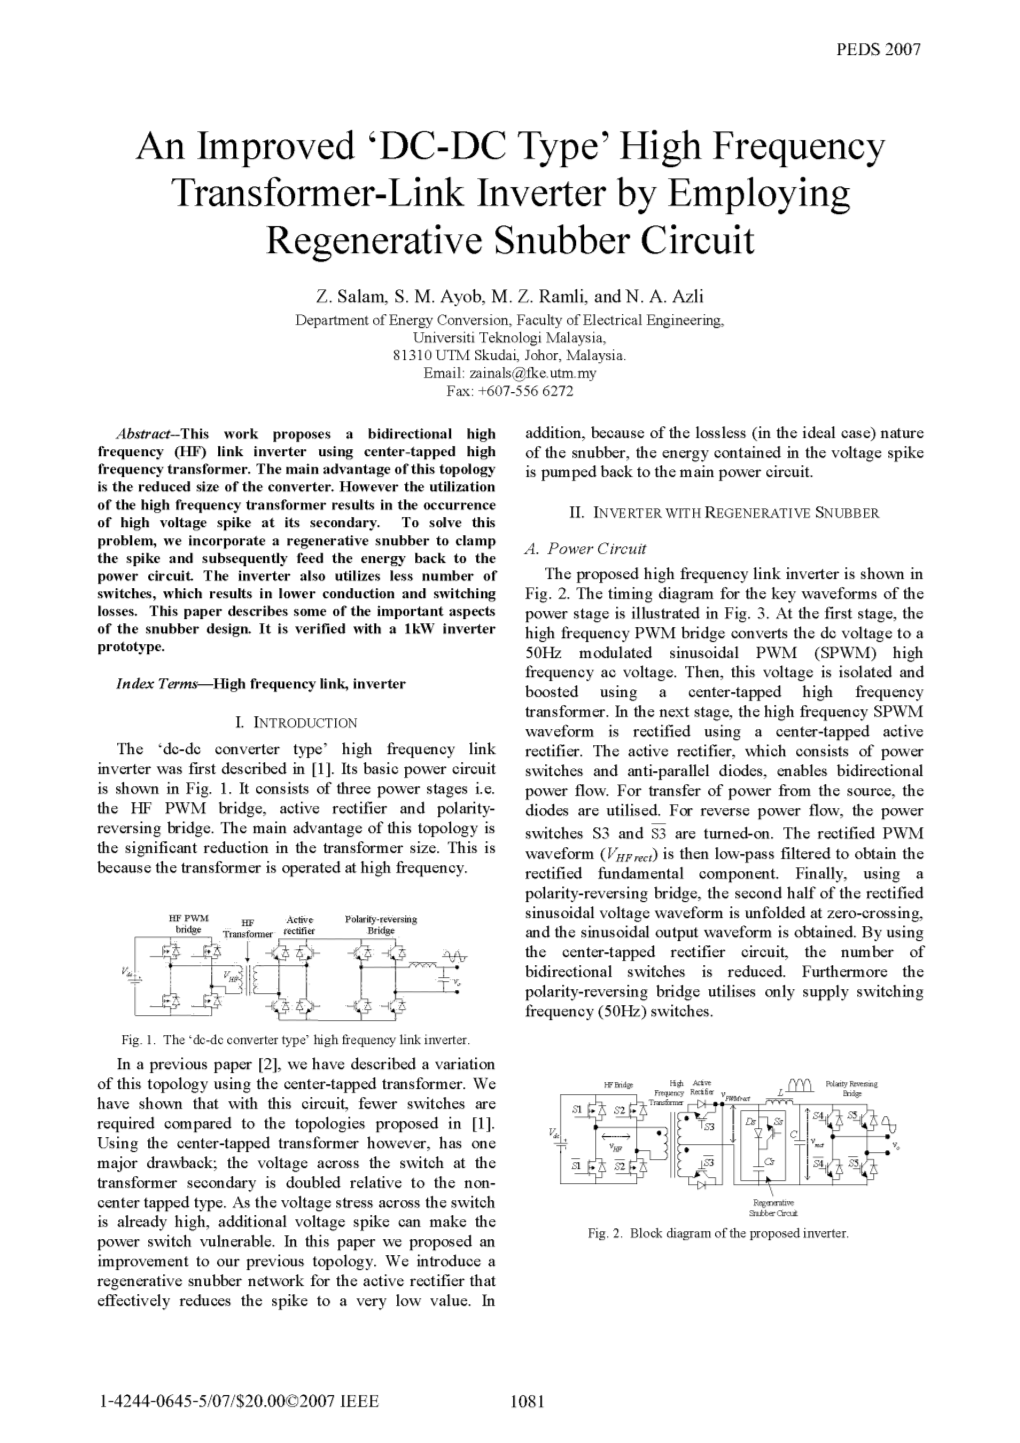 Regenerative Snubber Circuit